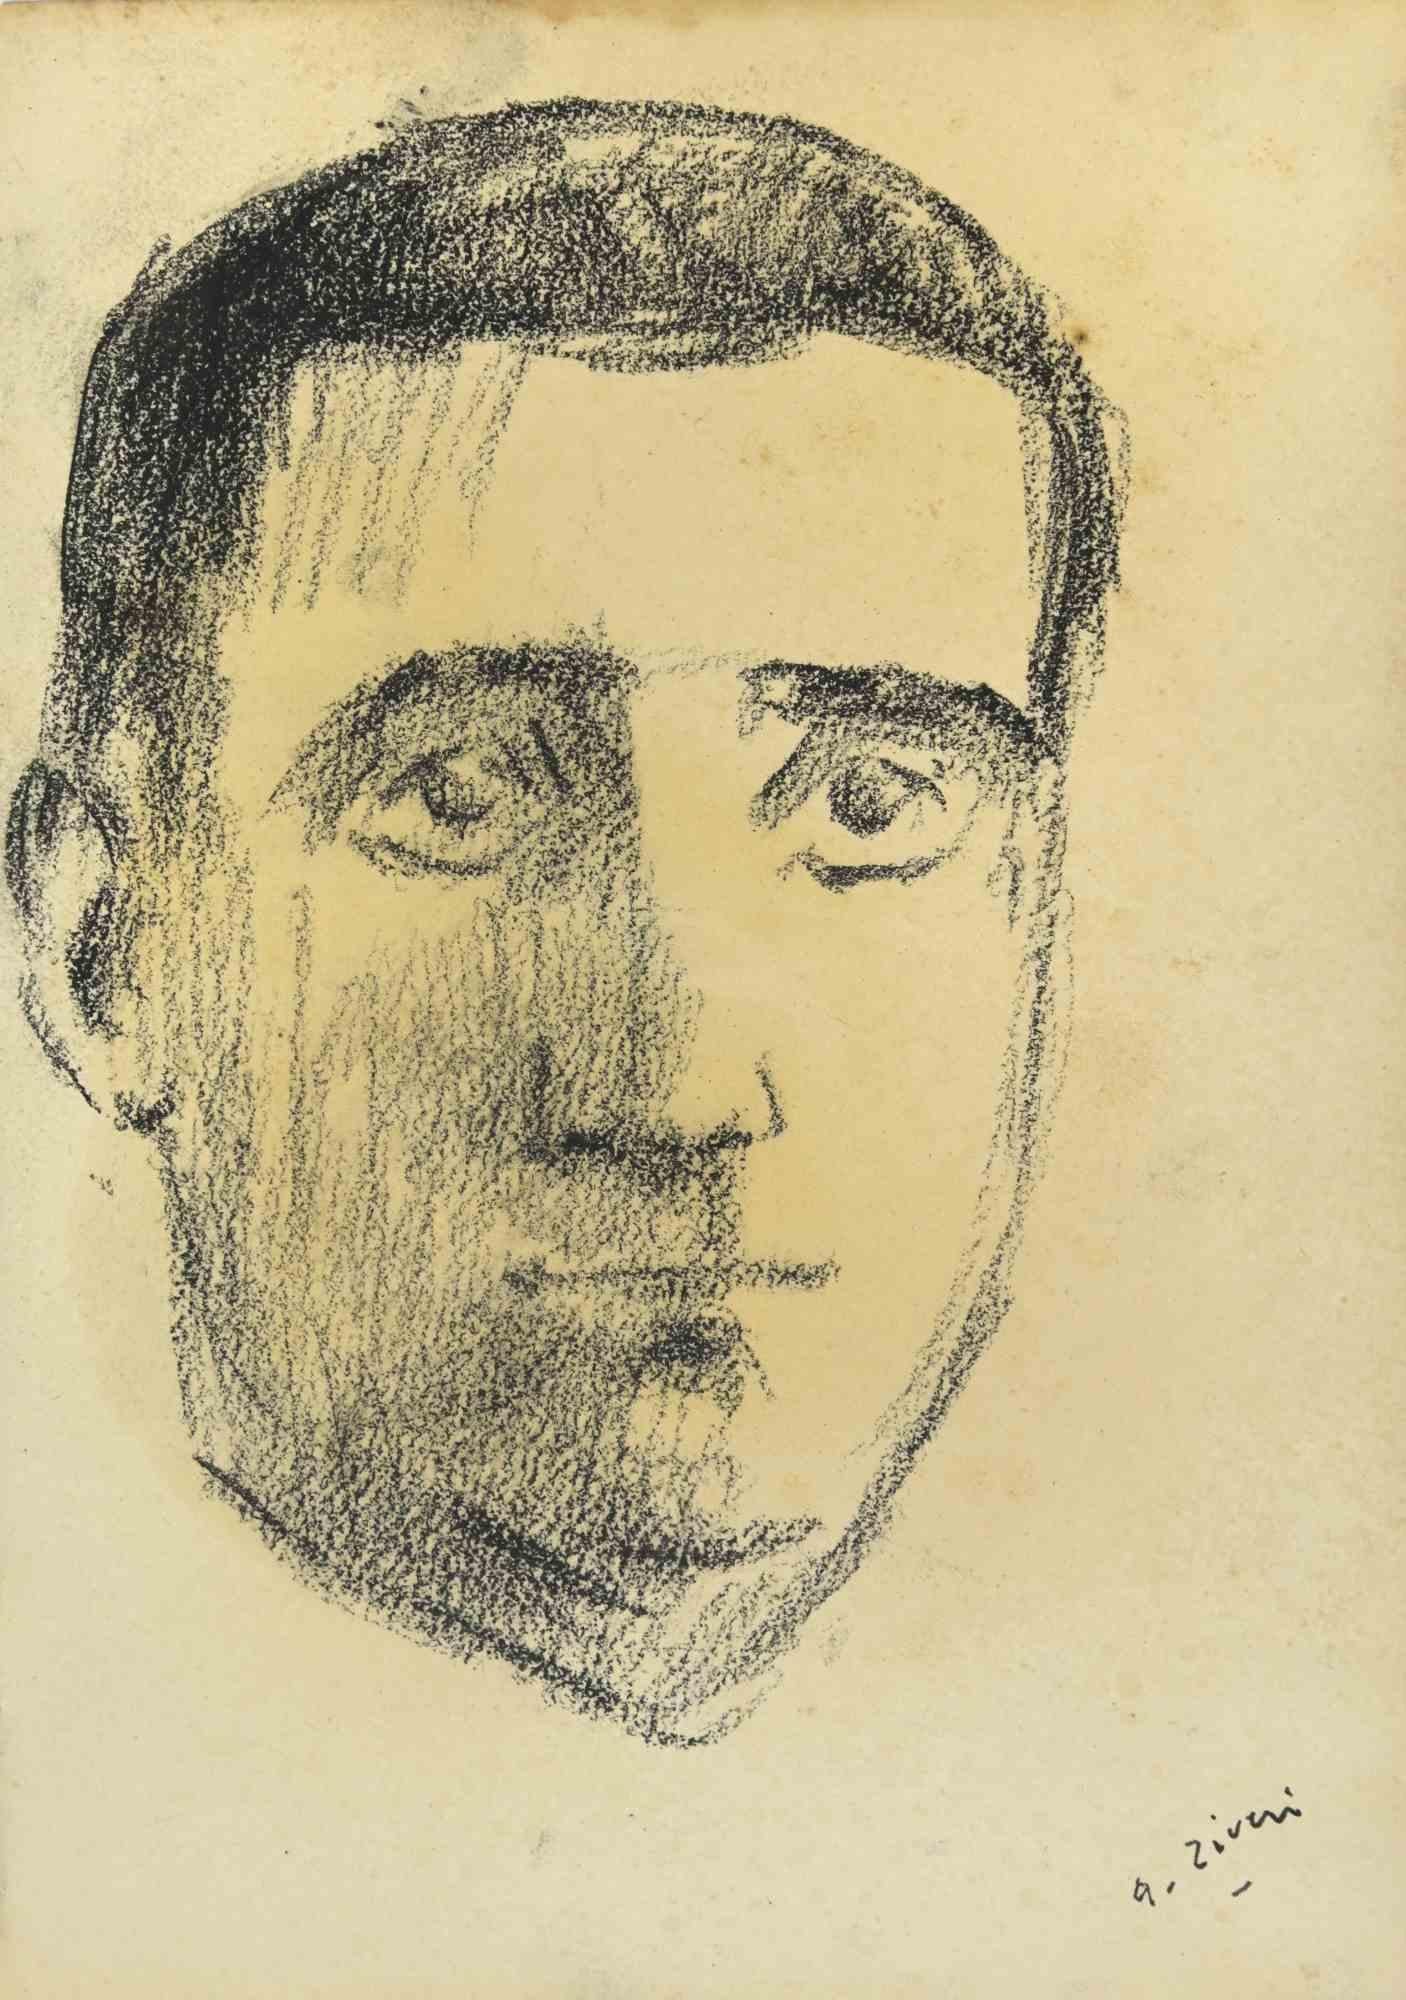 Das Porträt ist eine Zeichnung von Alberto Ziveri aus den 1930er Jahren.

Zeichenkohle auf Papier.

Handsigniert.

In gutem Zustand.

Das Kunstwerk wird durch geschickte Striche meisterhaft dargestellt.

Alberto Ziveri (Rom, 1908 - 1990), der